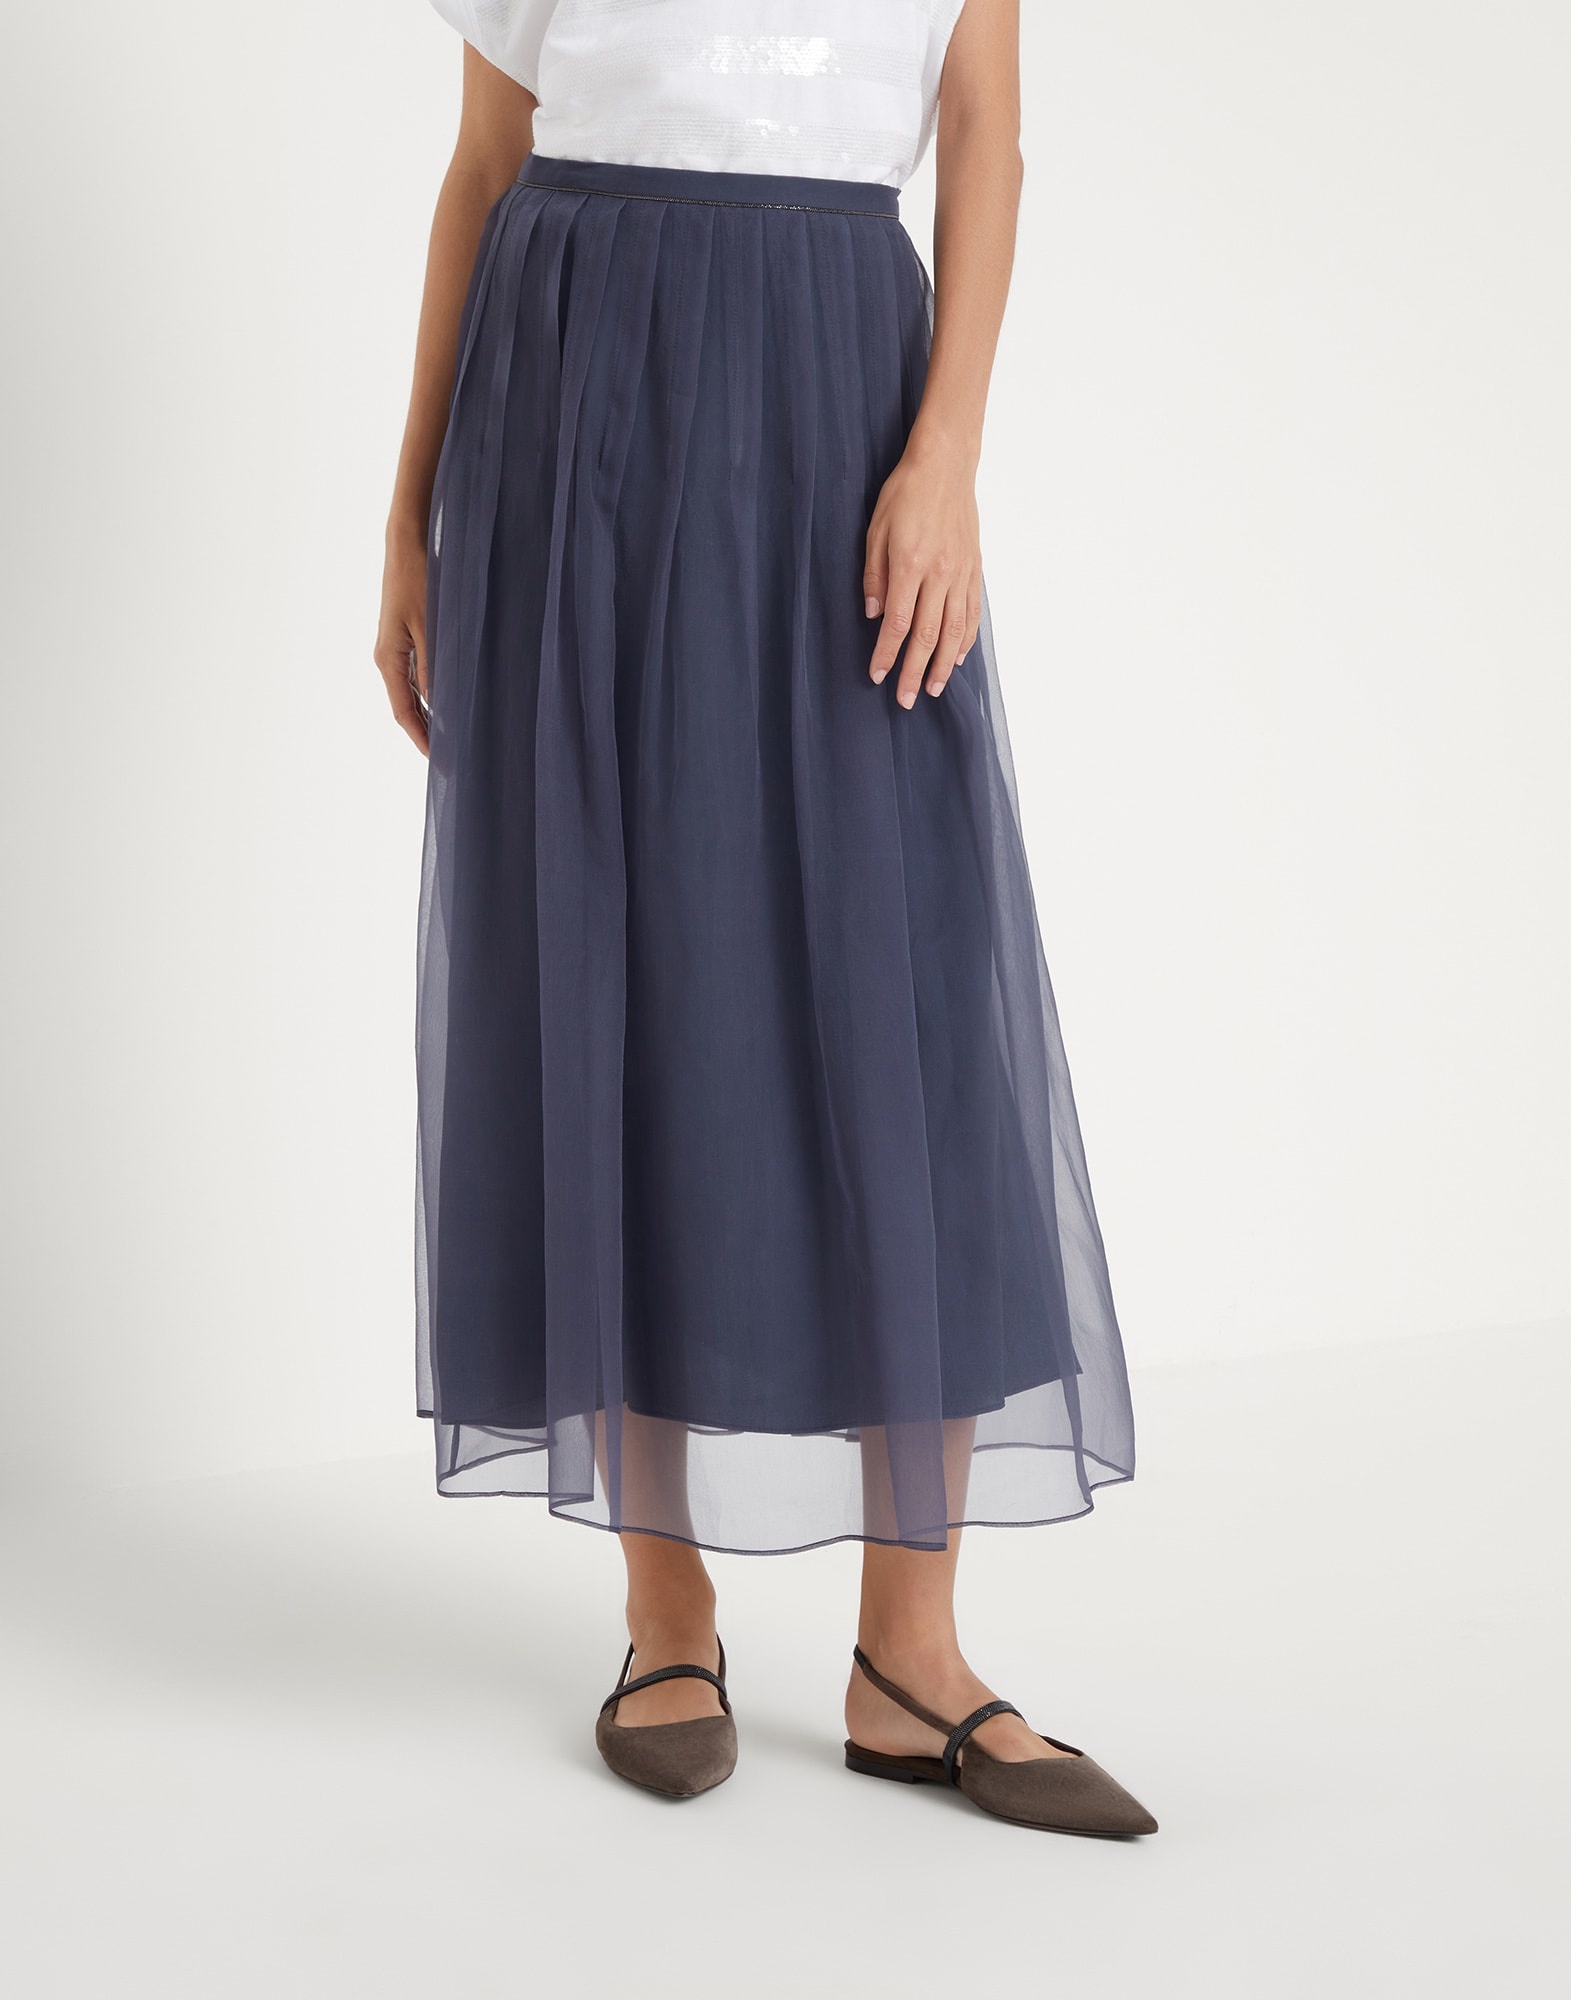 Crispy silk pleated midi skirt with shiny waistband - 1